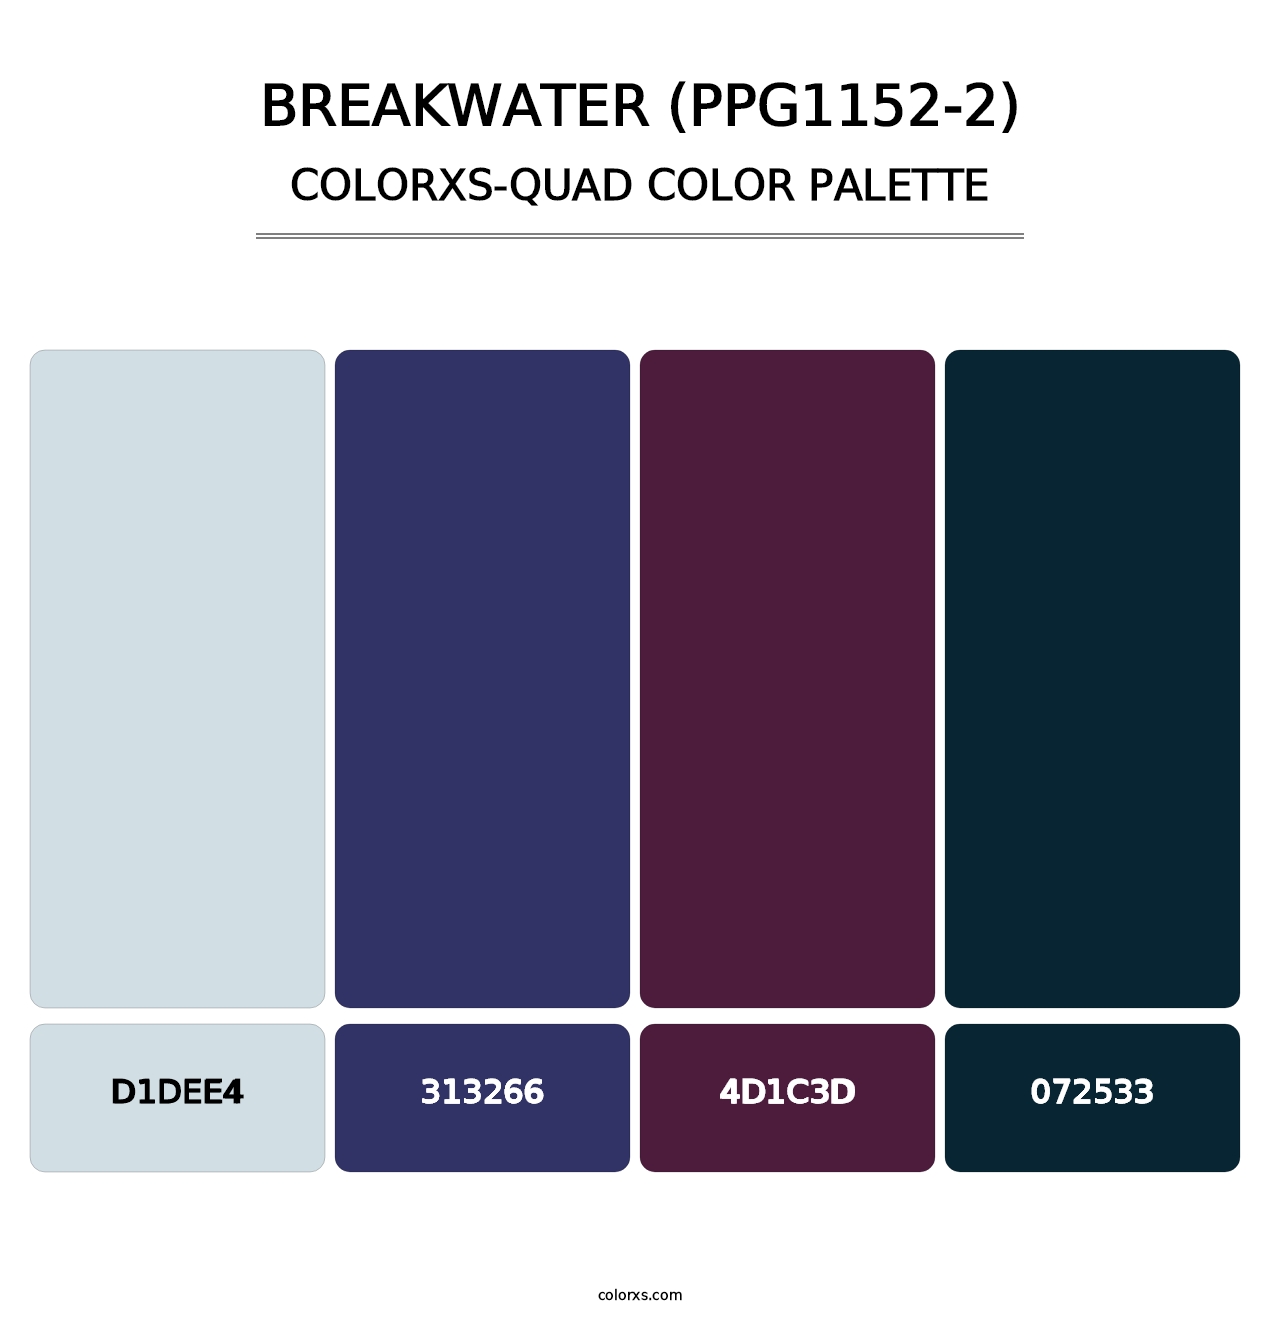 Breakwater (PPG1152-2) - Colorxs Quad Palette